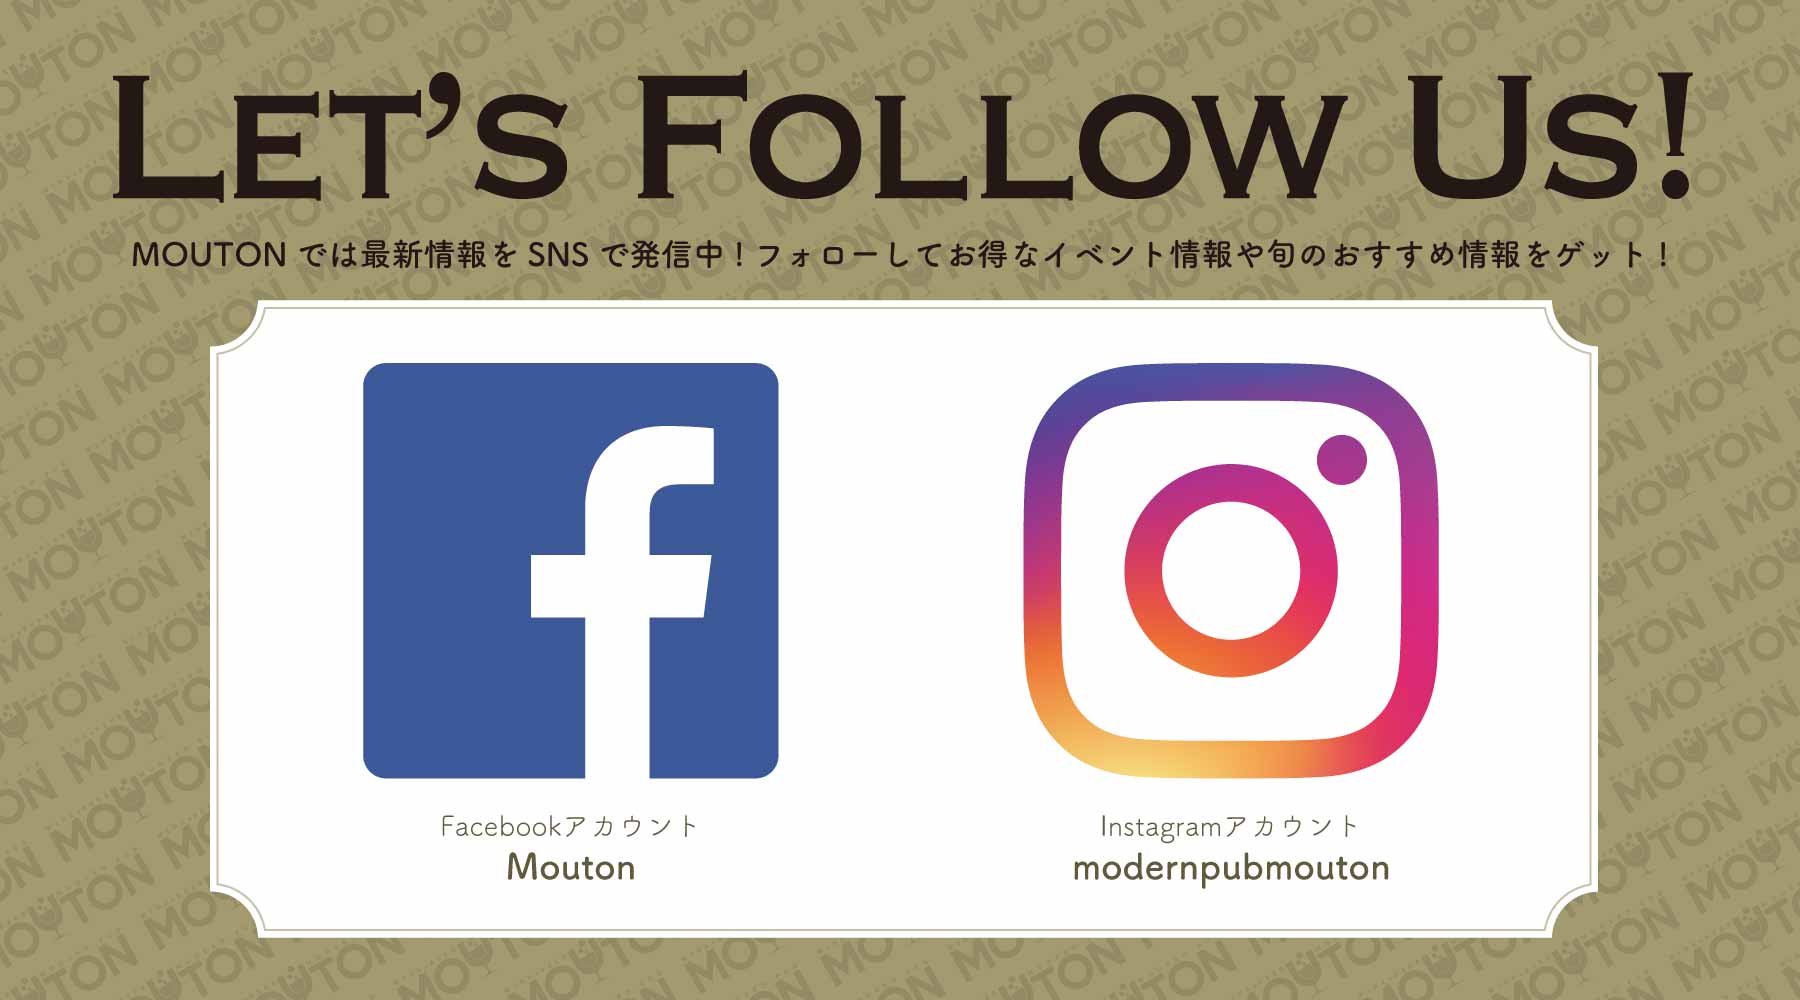 Let's Follow Us!! SNS告知